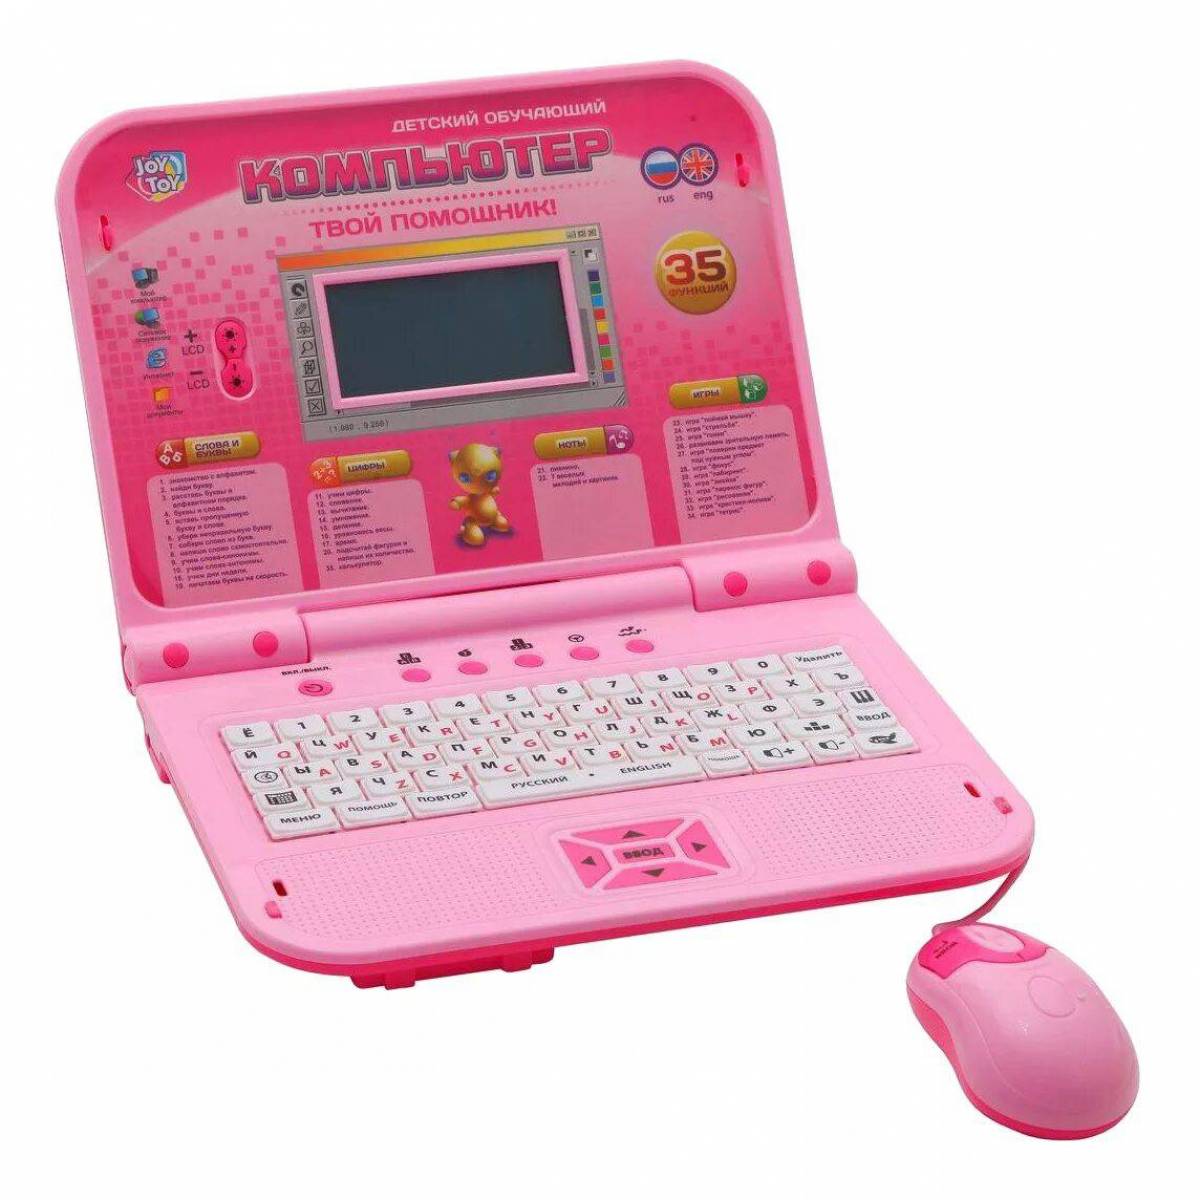 Игрушки купить 12. Компьютер Joy Toy 7297. Обучающий компьютер Play Smart Joy Toy 7297. Ноутбук обучающий Joy Toy 7296. Детский компьютер Joy Toy 7160 клавиатура.